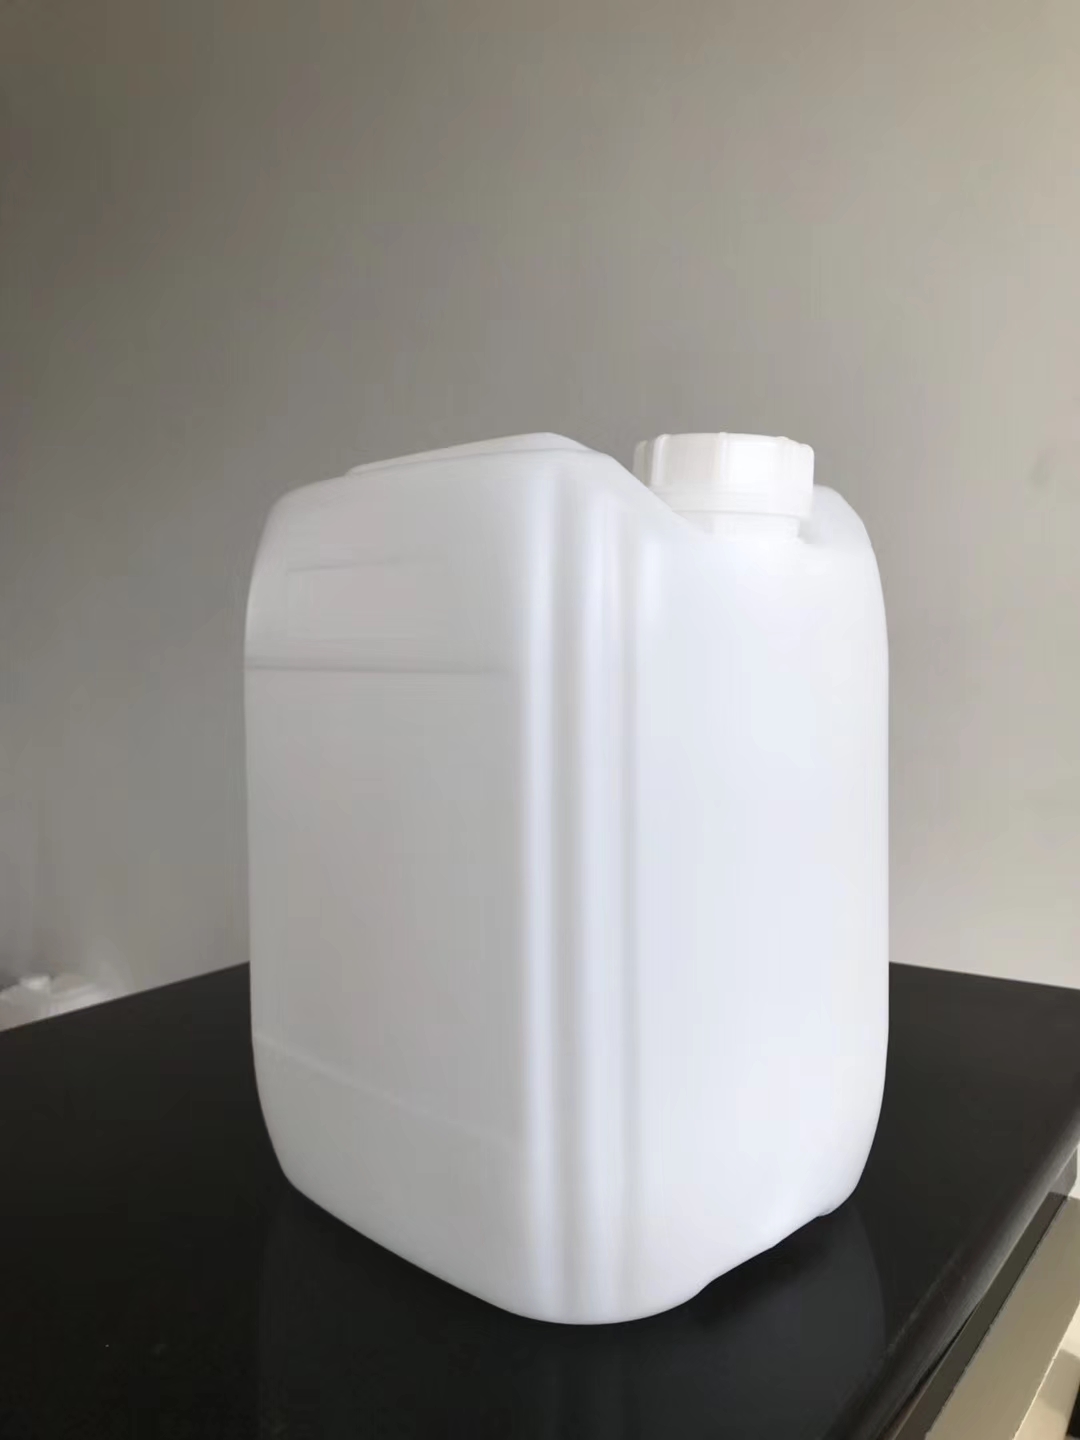 食品级塑料桶 20公斤加强筋塑料桶 塑料桶生产厂家直销